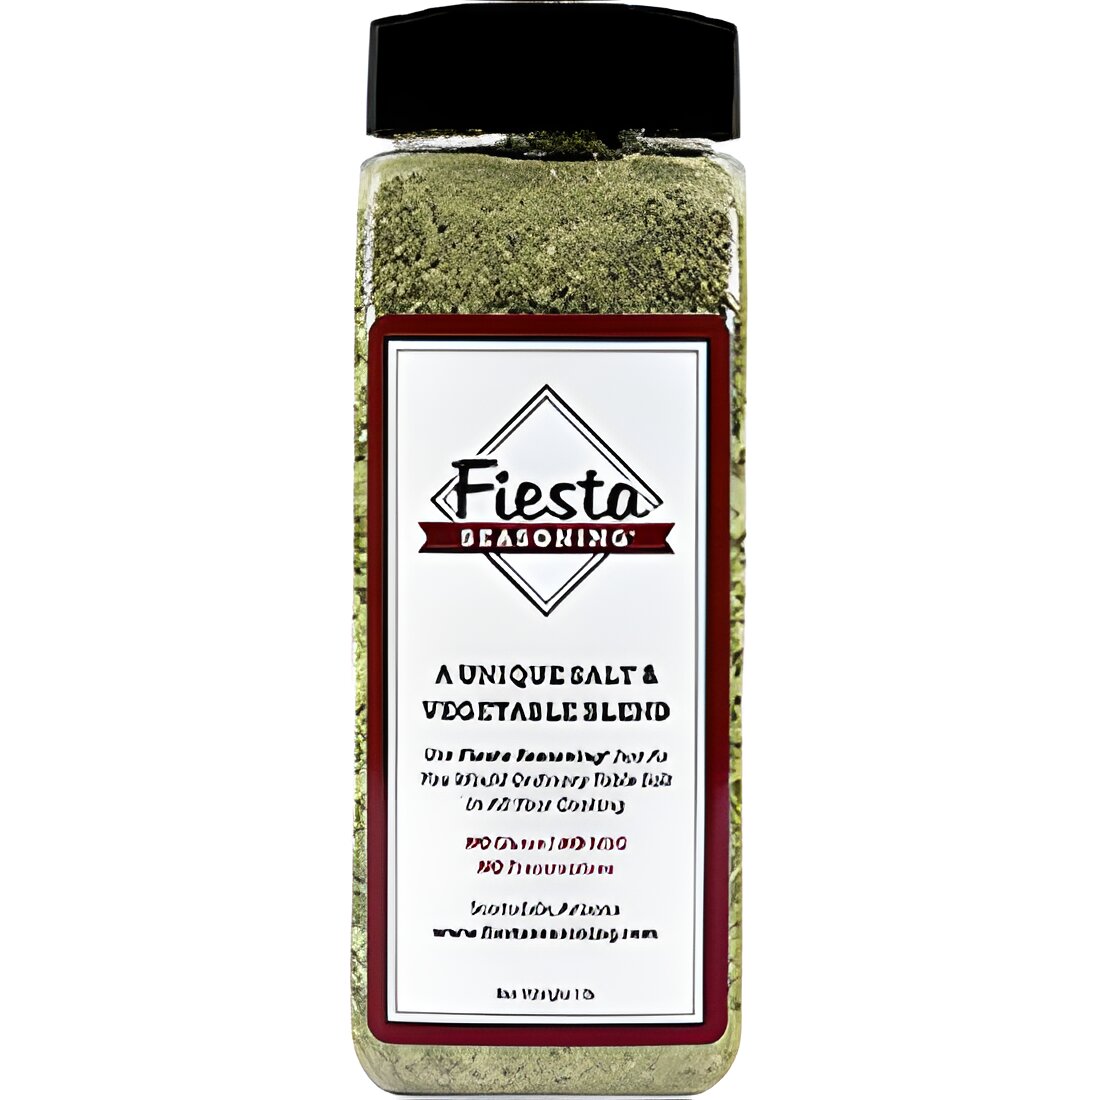 Free Fiesta Seasoning Organic Salt